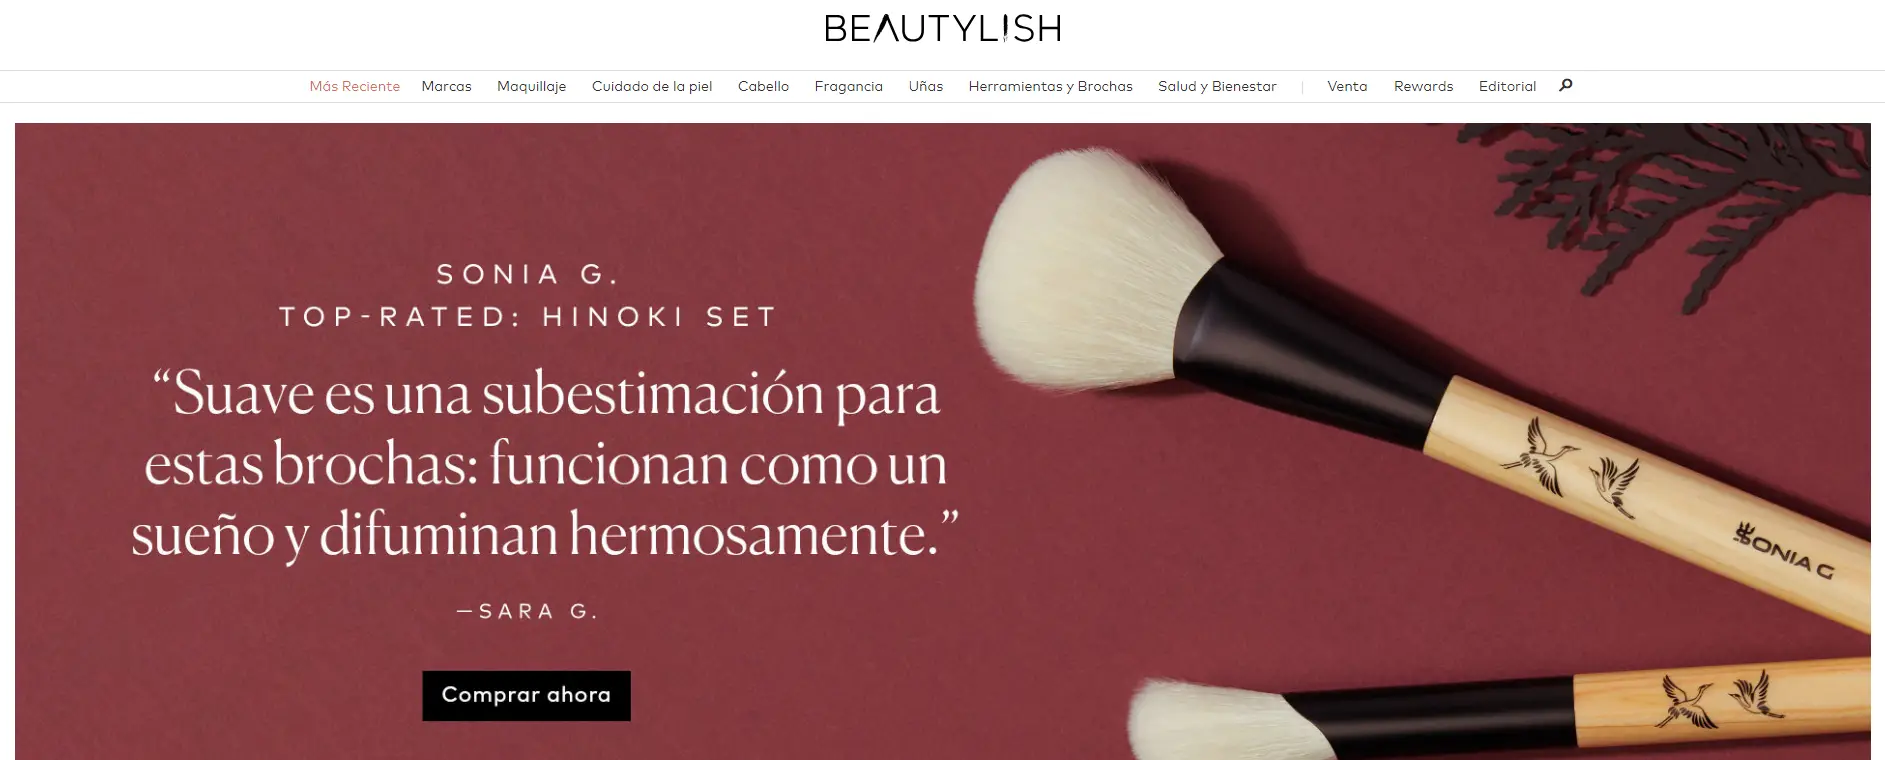 Beautylish Consejos de belleza, reseñas y tutoriales